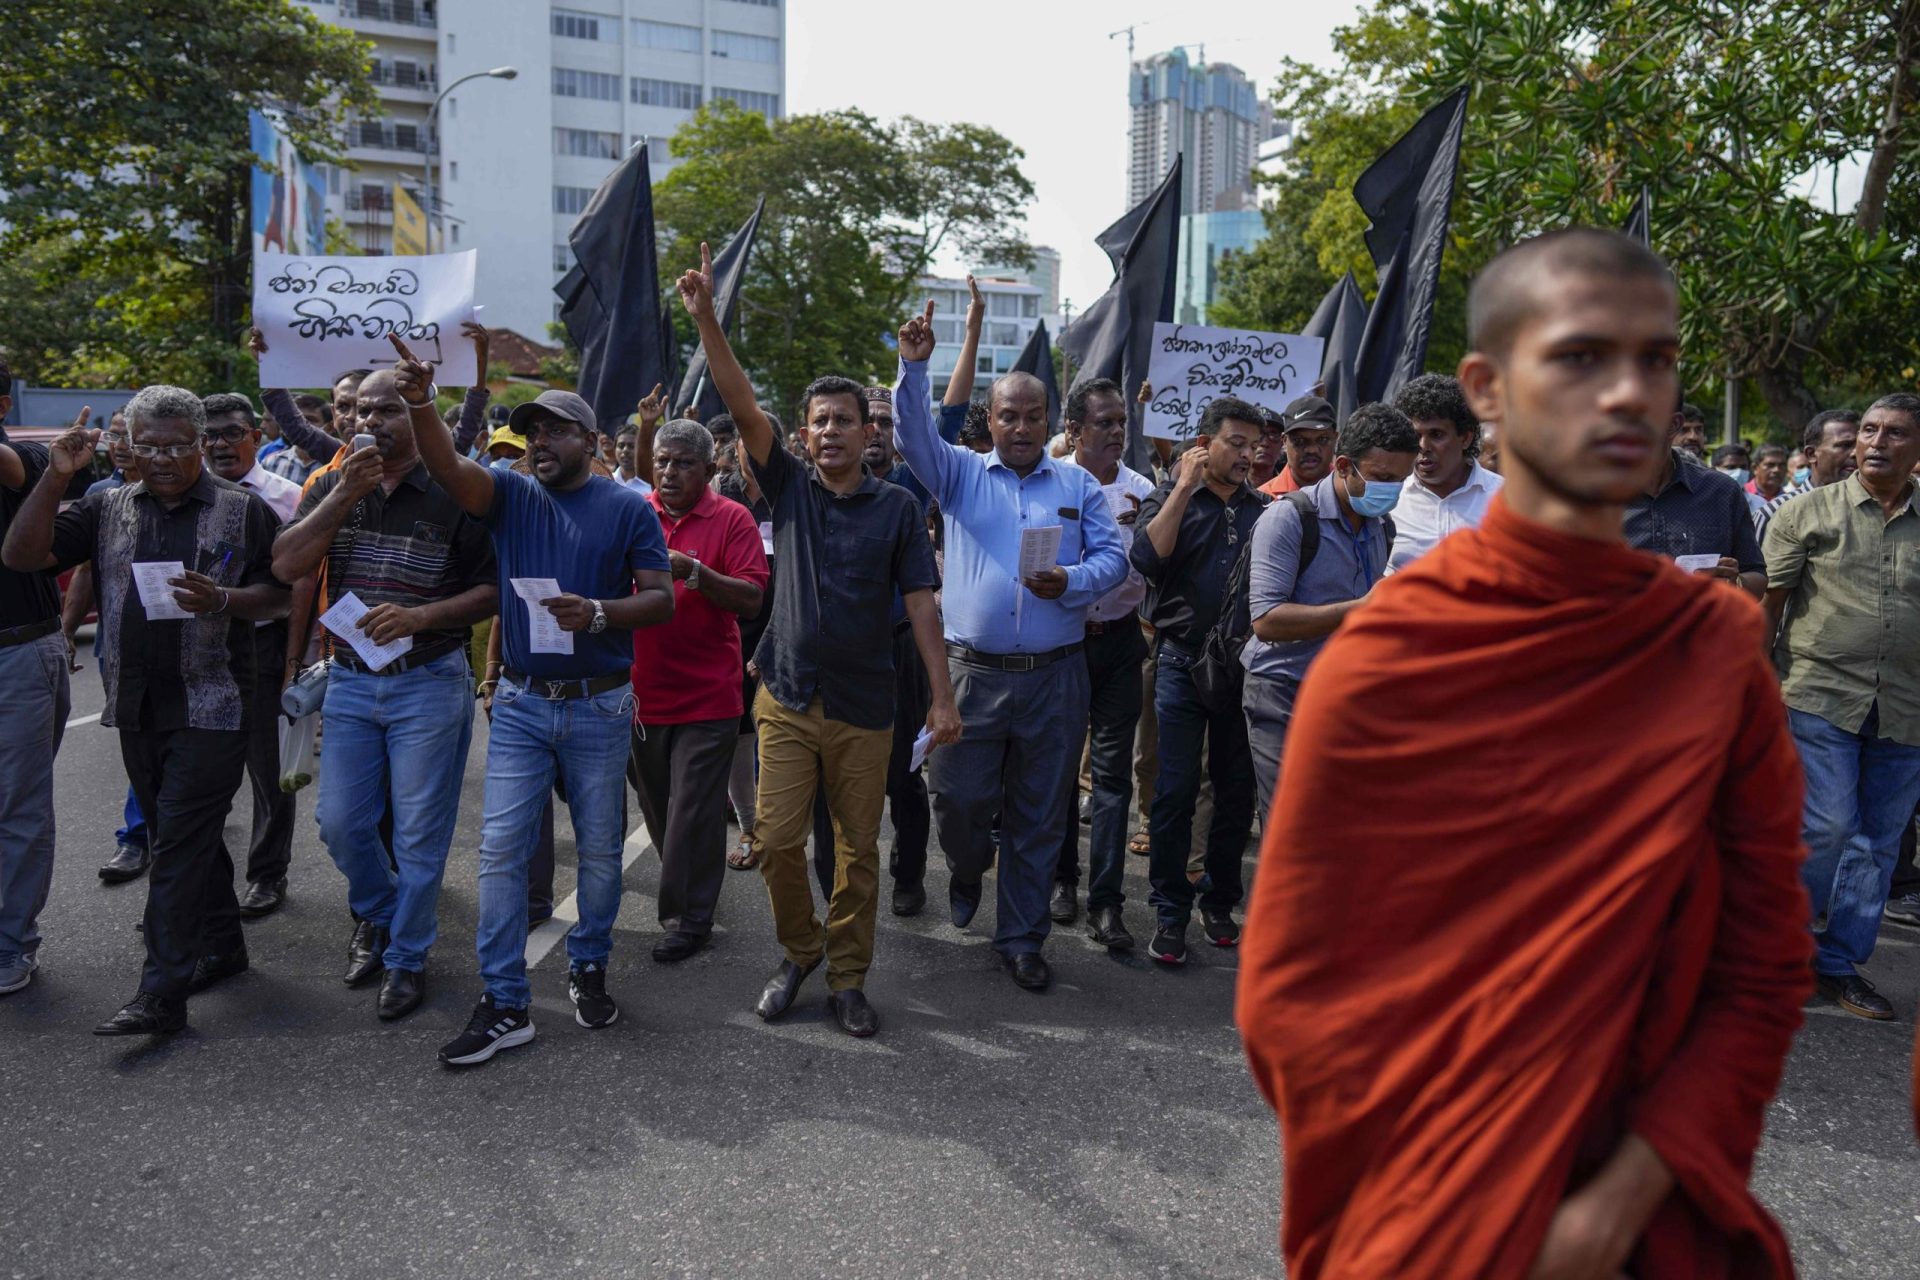 Los ciudadanos de Sri Lanka se manifiestan contra la represión de los manifestantes